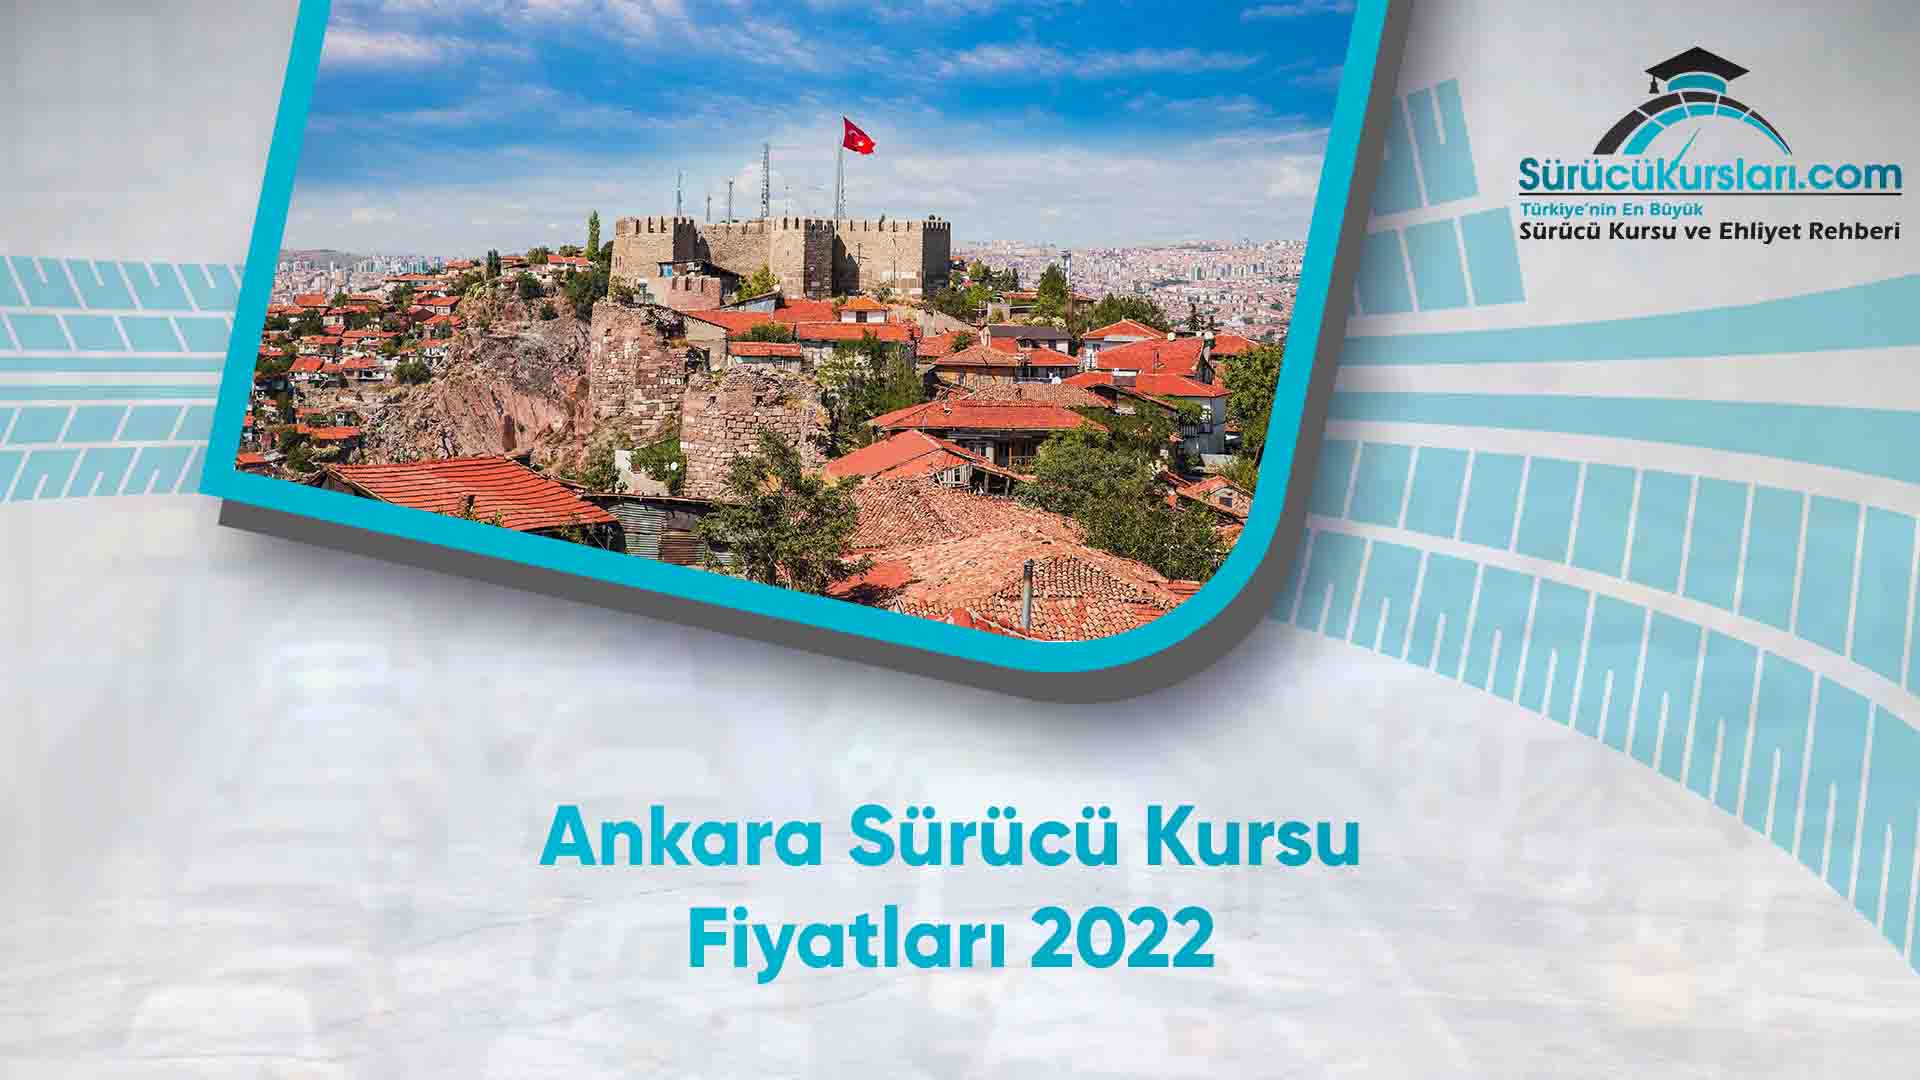 Ankara Sürücü Kursu Fiyatları 2022